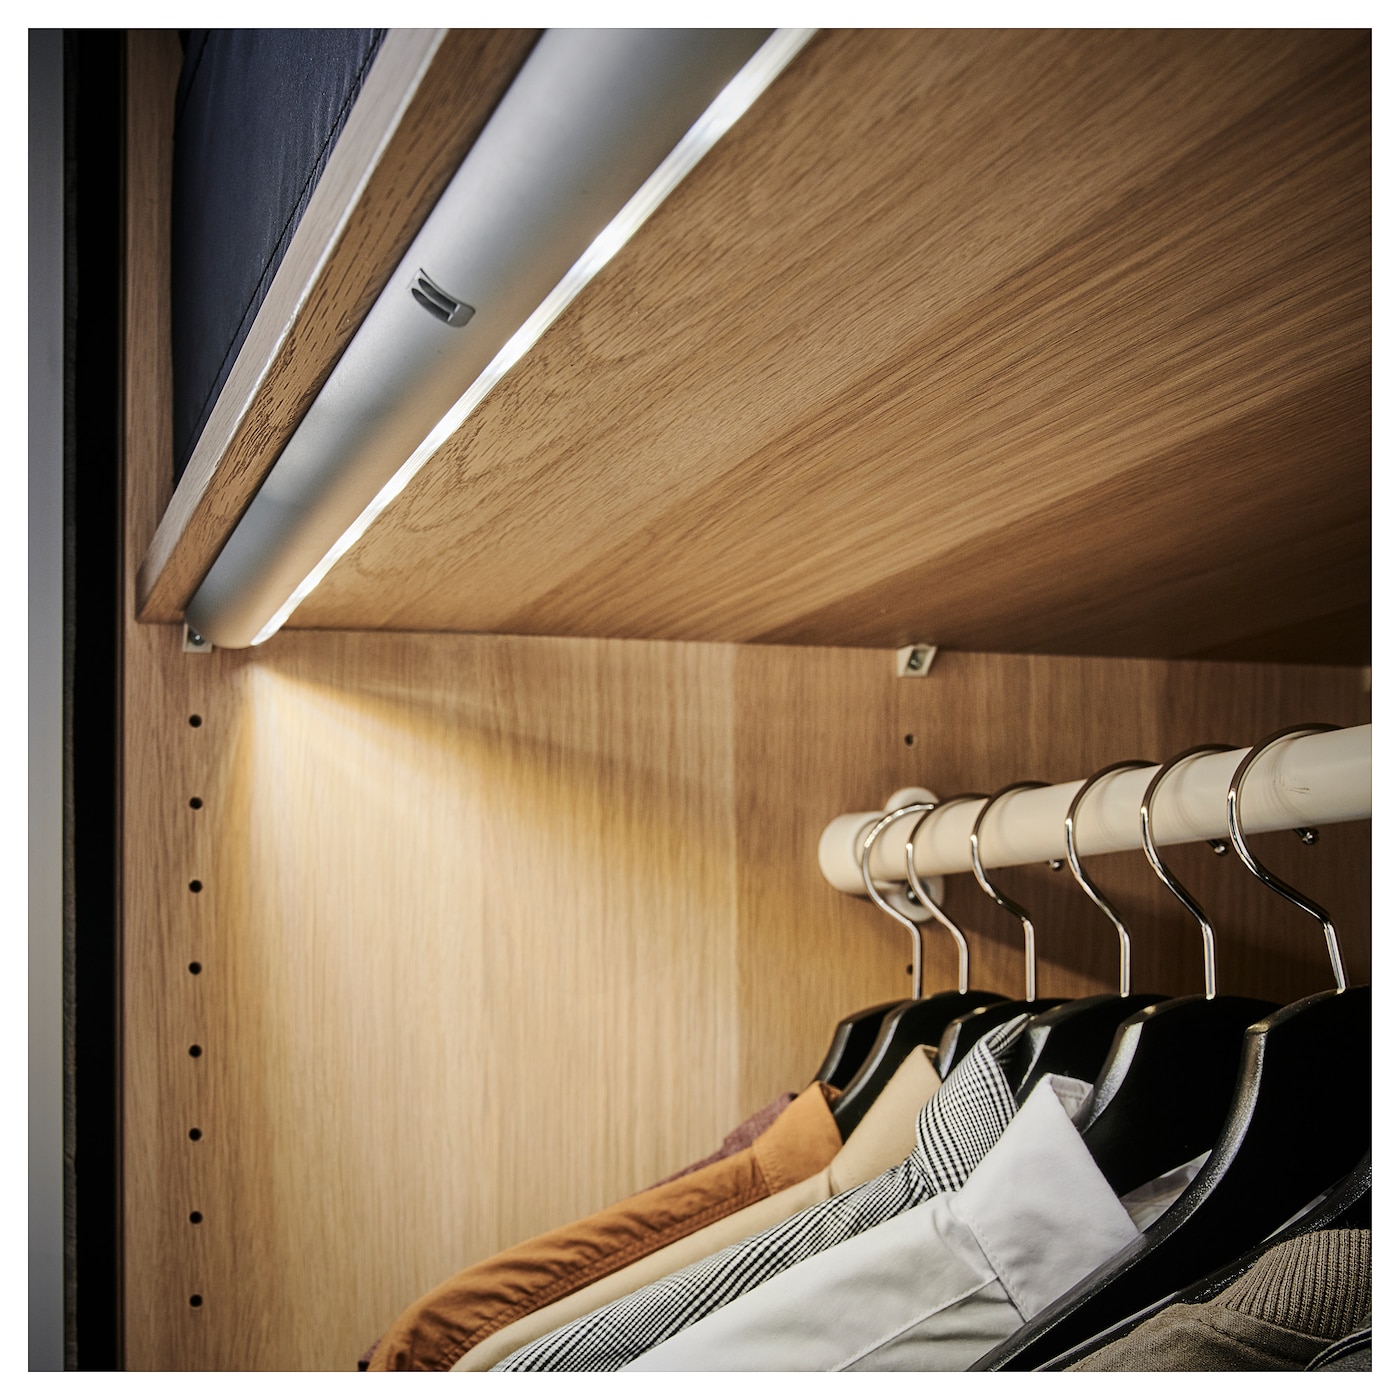  подсветка в шкаф: Подсветка шкафа светодиодной лентой .